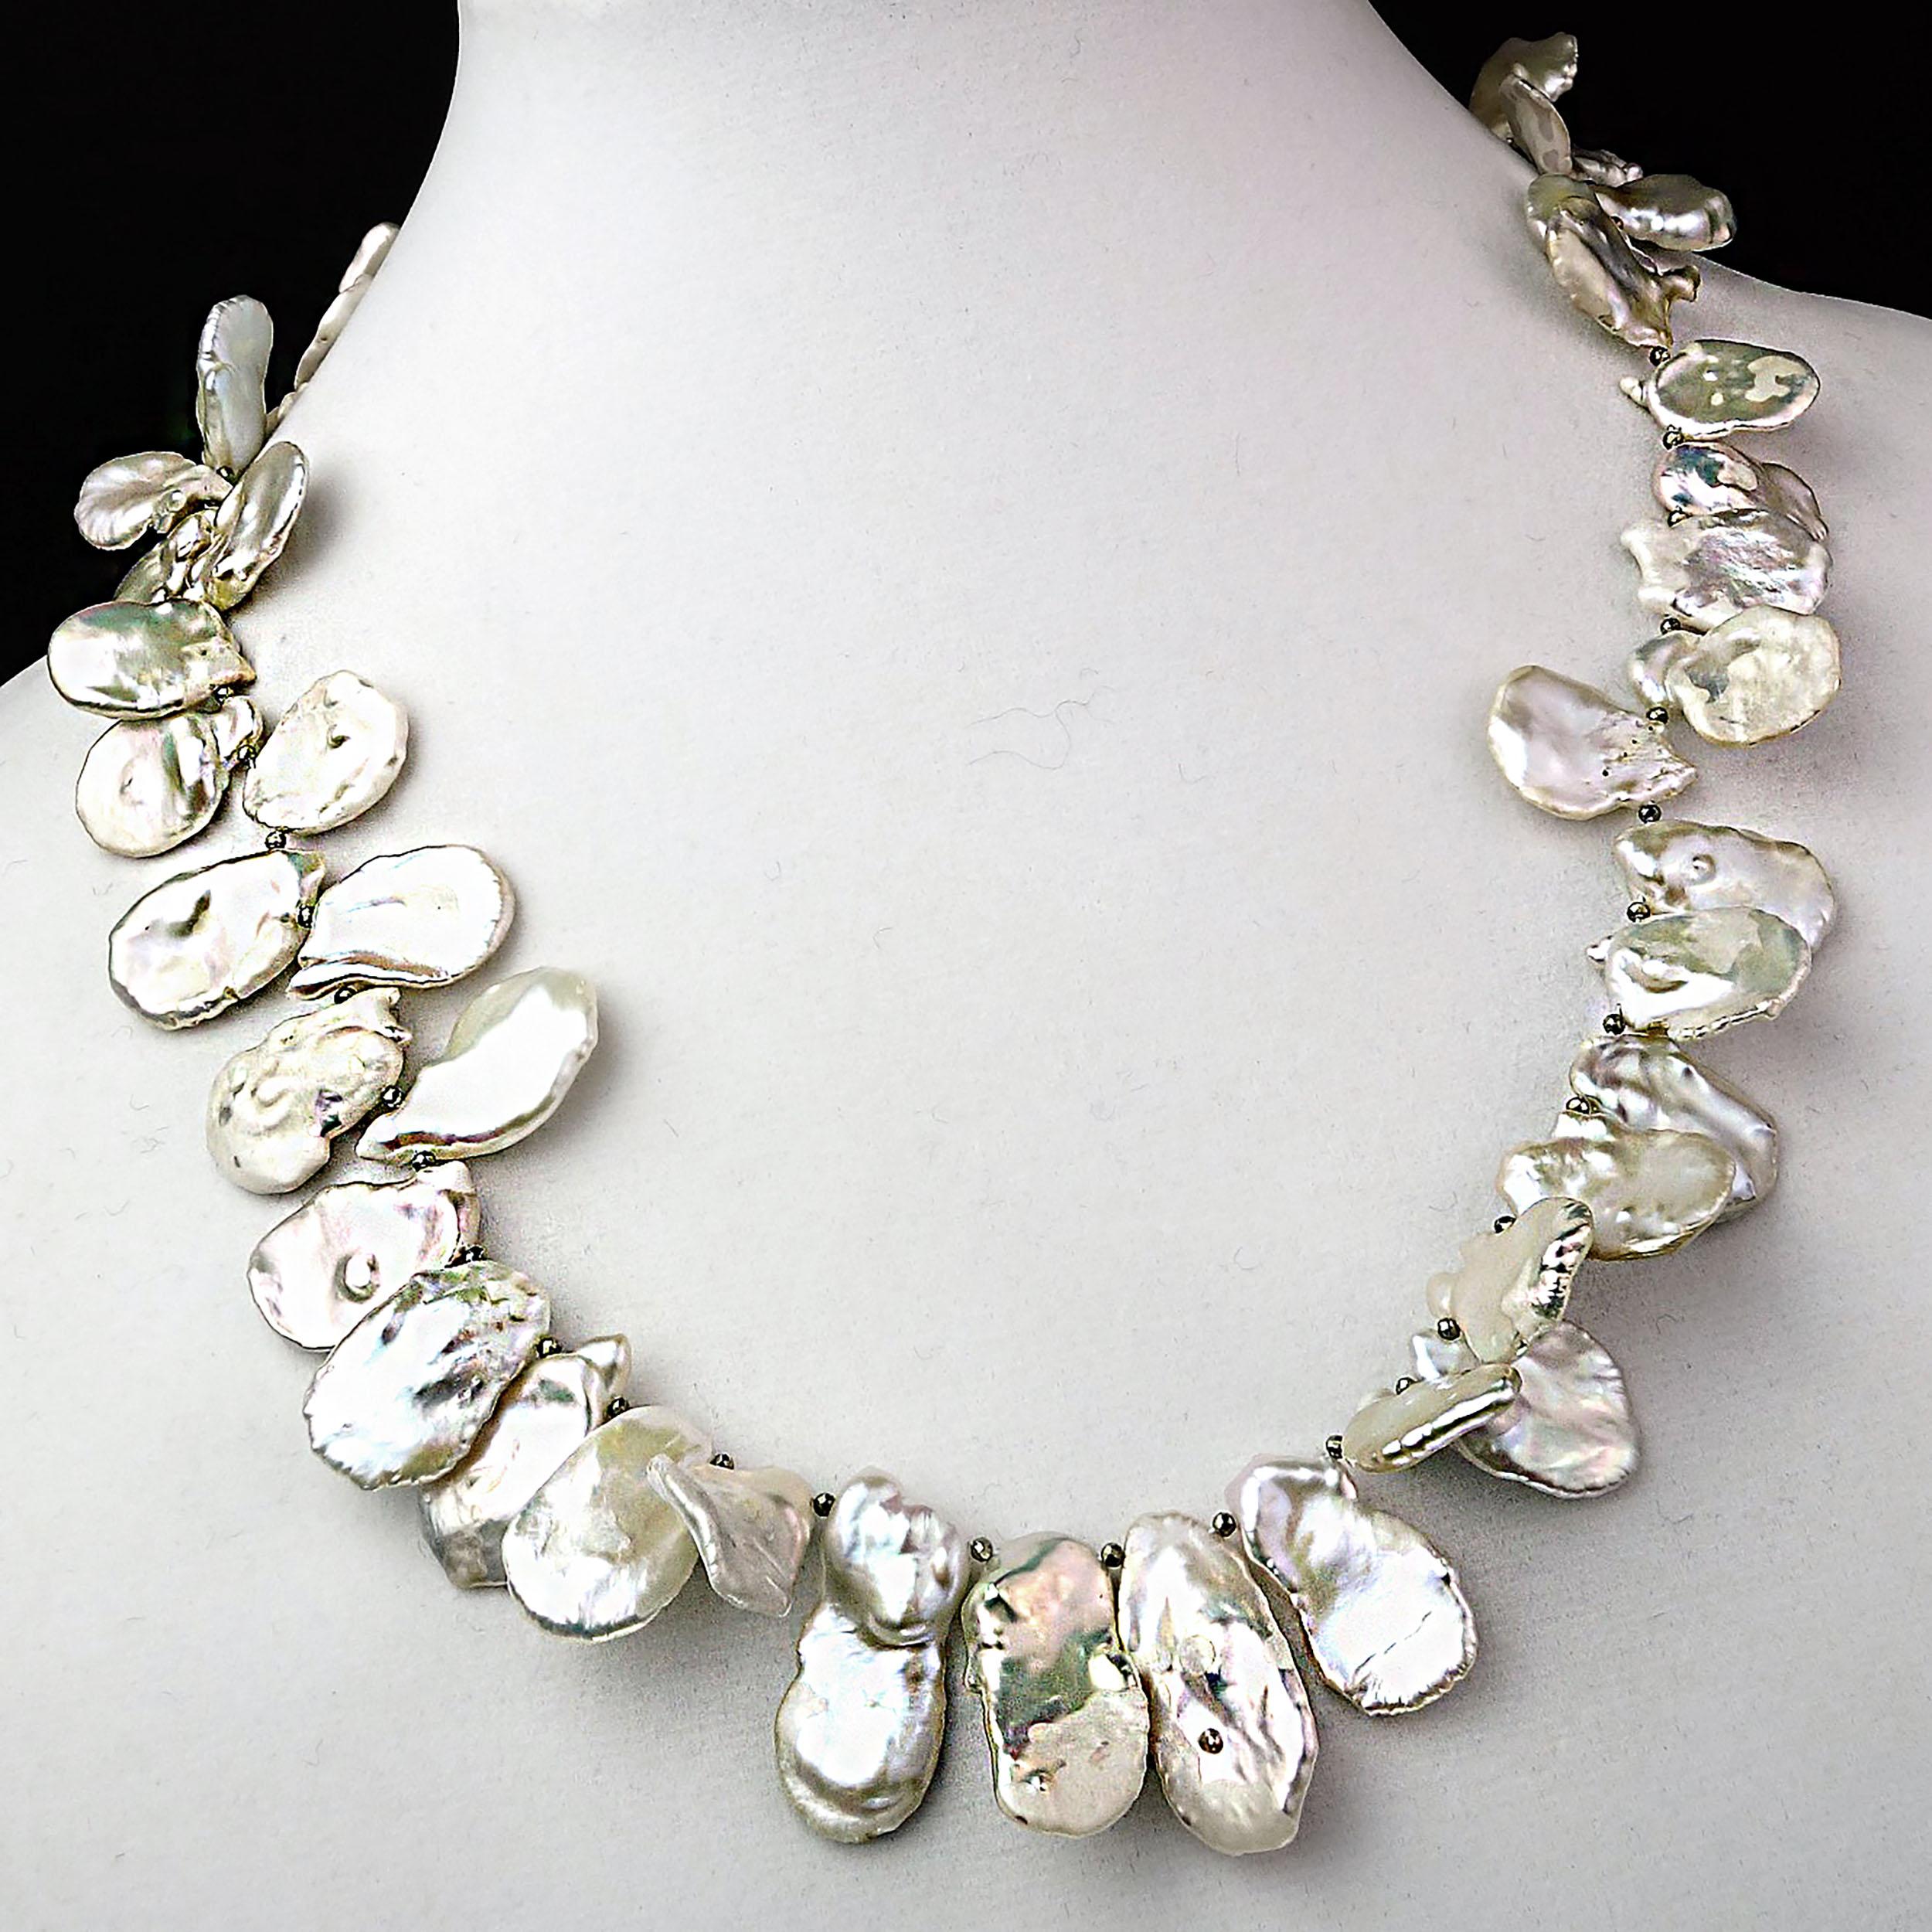  AJD Matinee Long collier de perles Keshi blanches et iridescentes, pierre de naissance de juin Pour femmes 